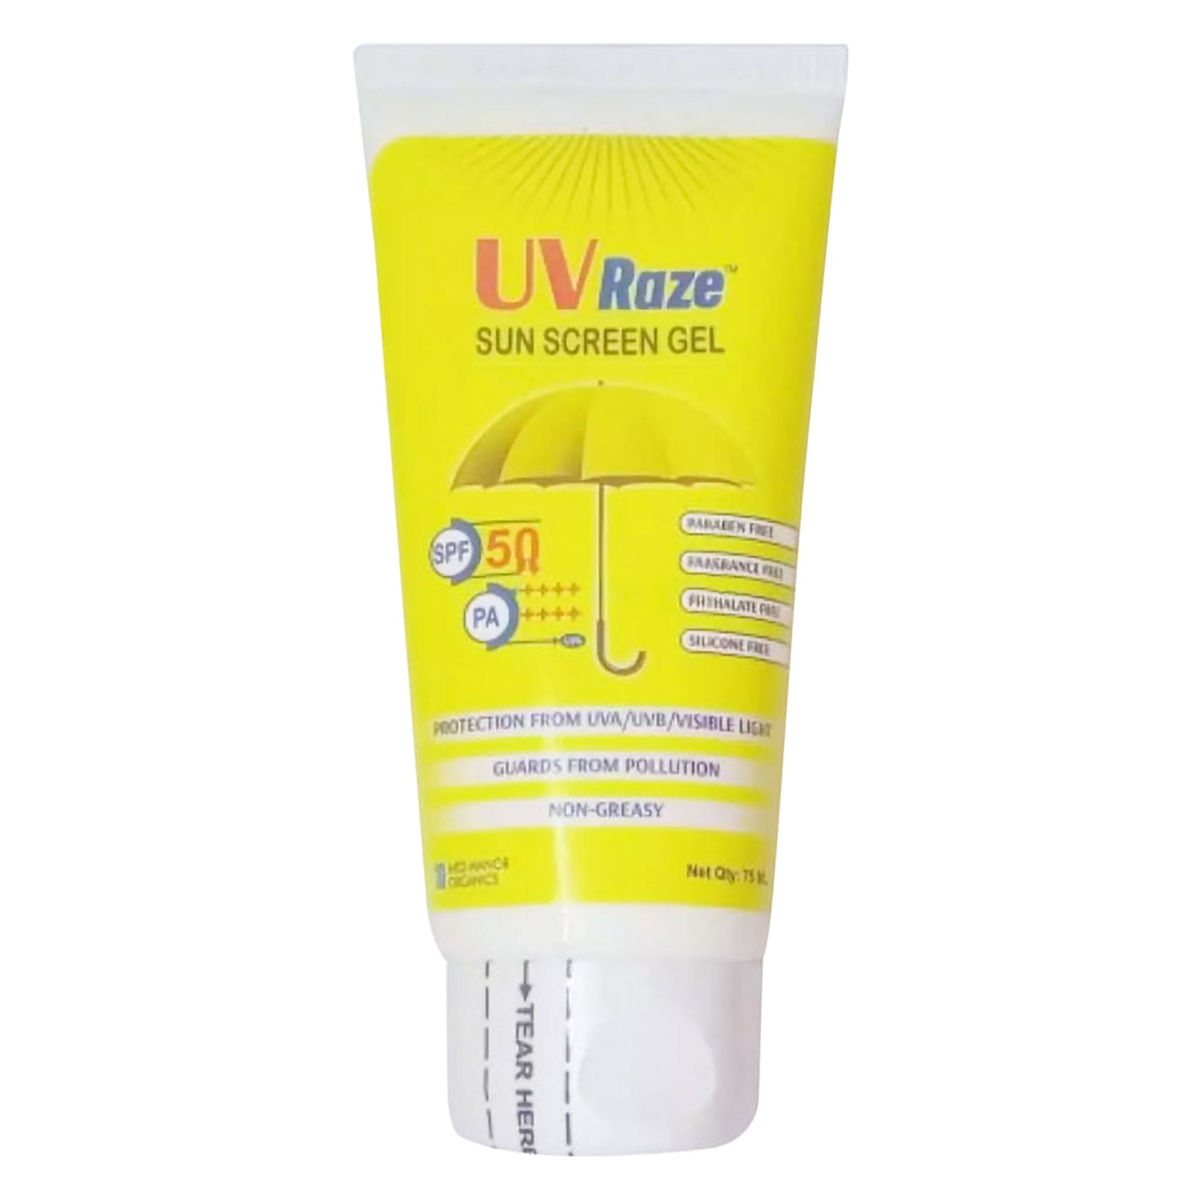 Uv Raze Spf 50+ Pa++++ Sunscreen Gel 75 ml, Pack of 1 